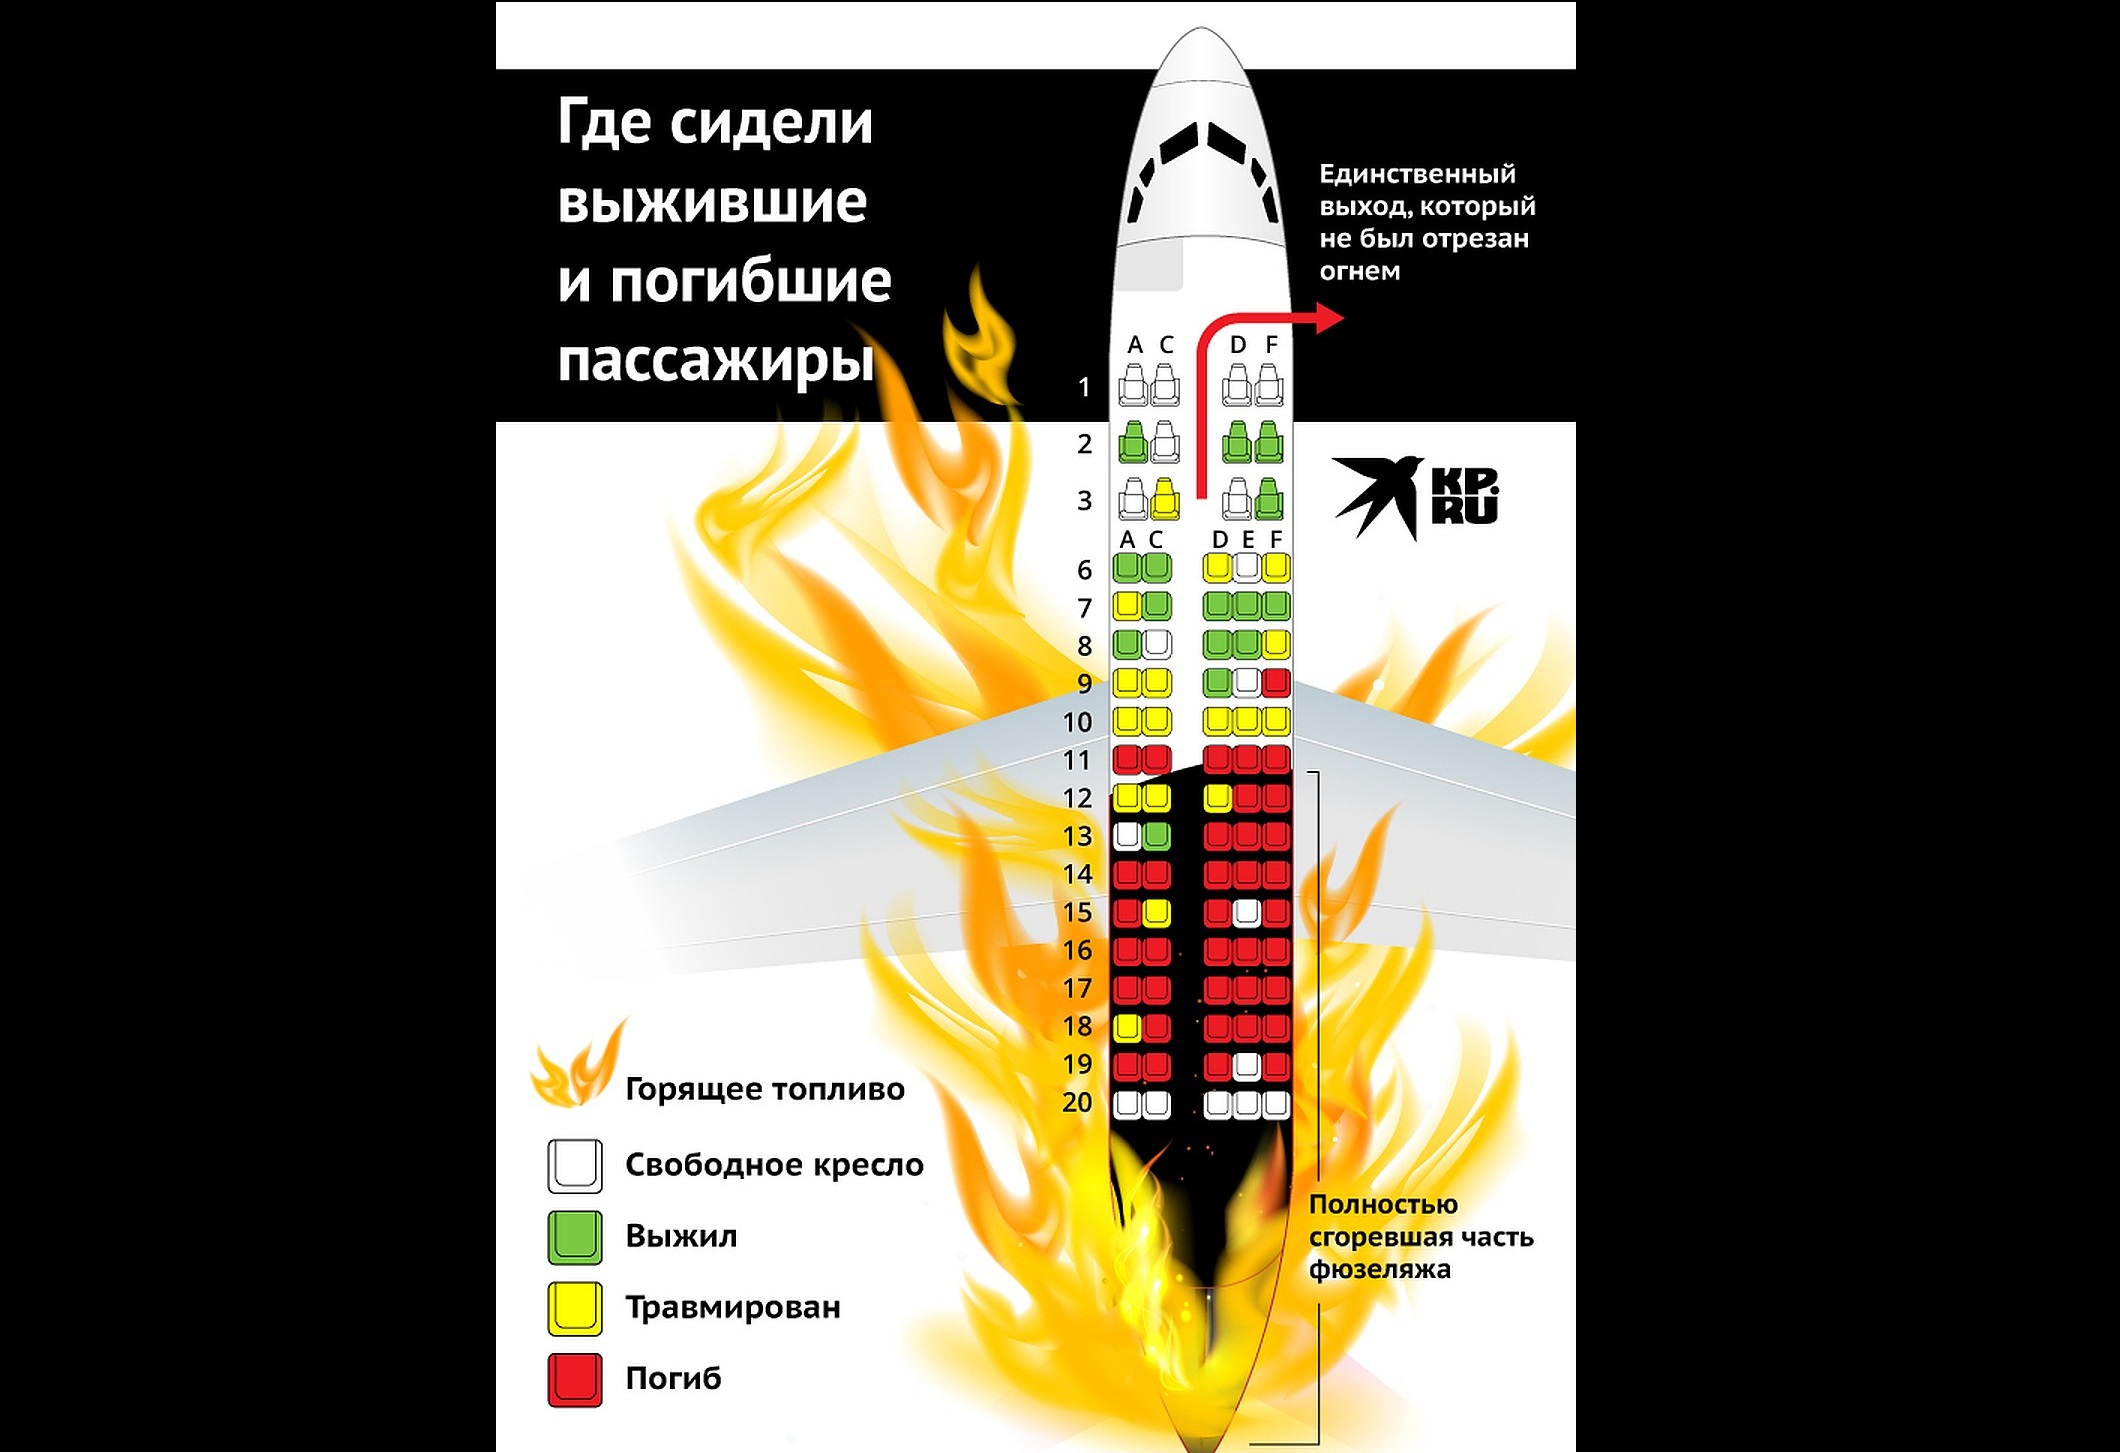 "Из них погибли почти все", - вскрылся страшный факт о рассадке пассажиров в сгоревшем Superjet 100 в Москве: фото